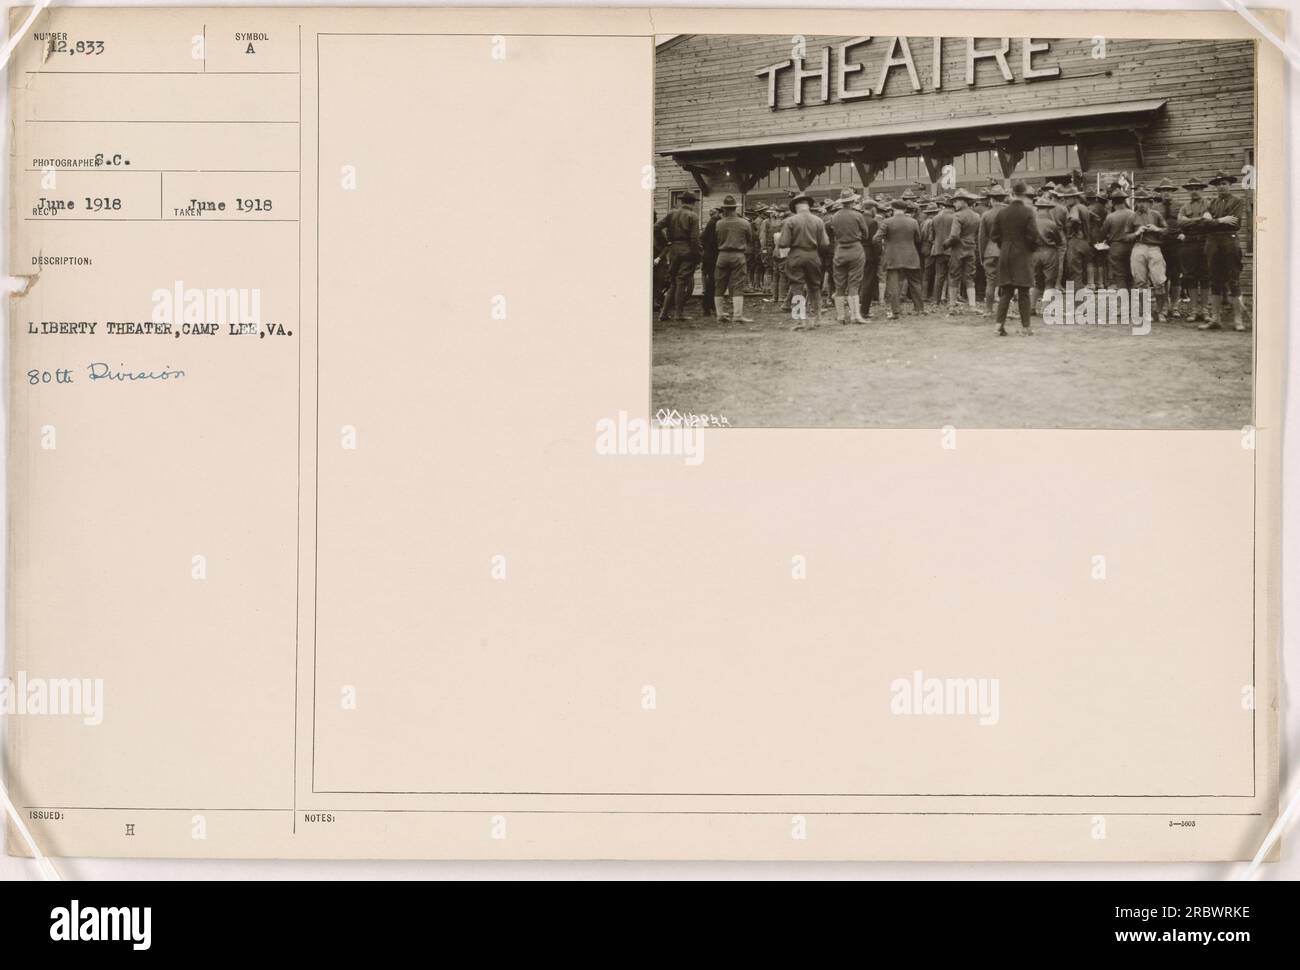 Ein Bild eines Liberty Theaters in Camp Lee, VA, im Jahr 1918. Das Foto wurde vom Fotografen C. ne aufgenommen und ist mit 111-SC-12833 beschriftet. Das Theater ist mit der 80. Division verbunden. Das Foto wurde als Teil einer Serie über amerikanische Militäraktivitäten während des Ersten Weltkriegs herausgegeben. Stockfoto